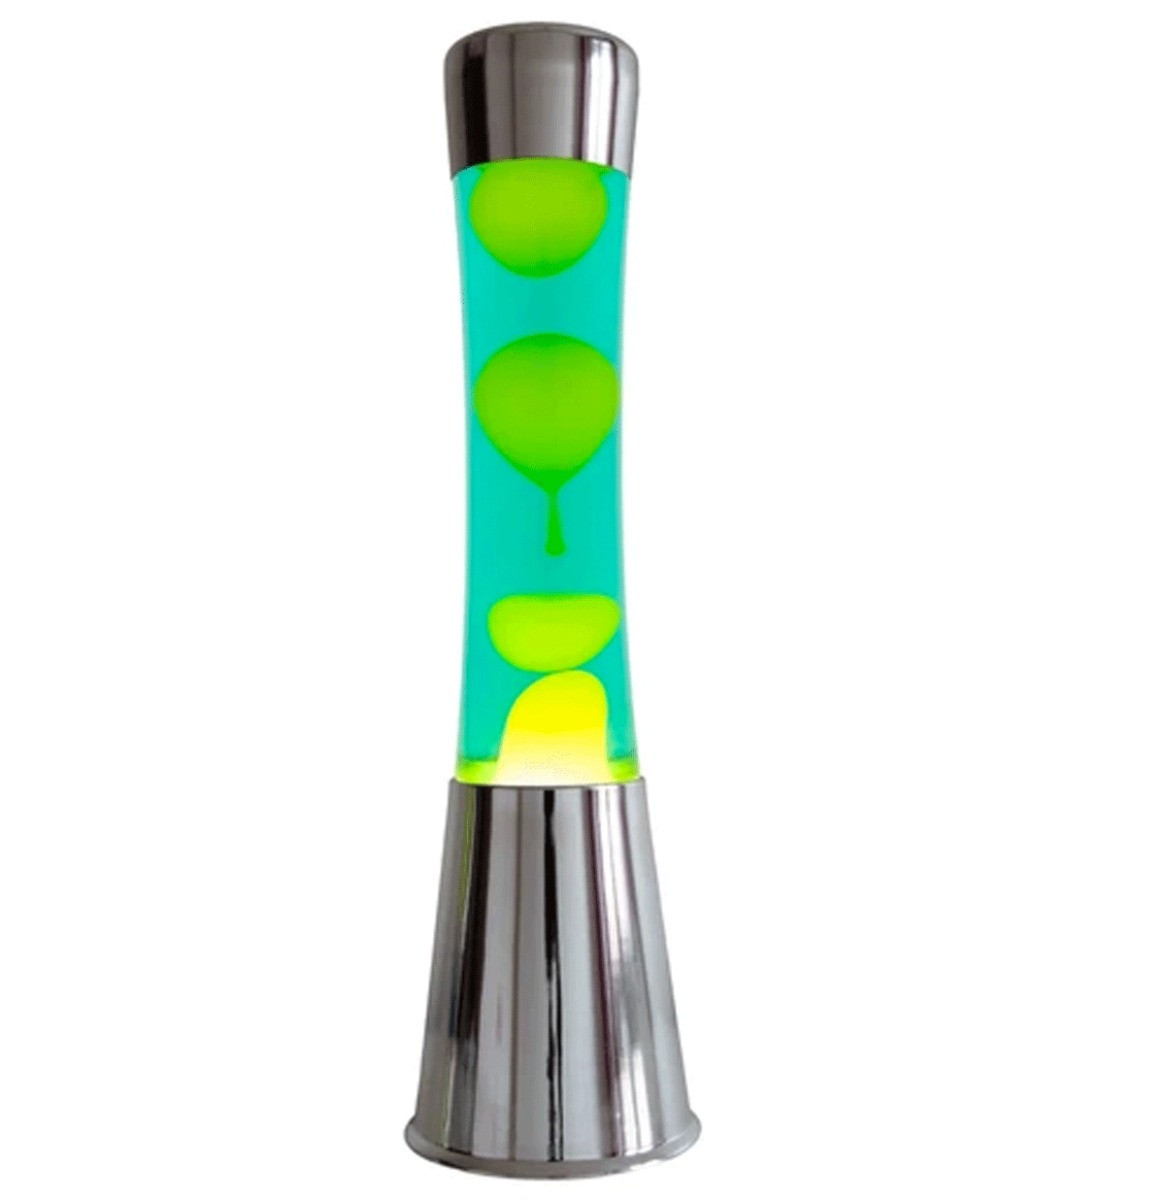 Fisura Lava Lamp - Chroom Met Geel Lava In Groene Vloeistof